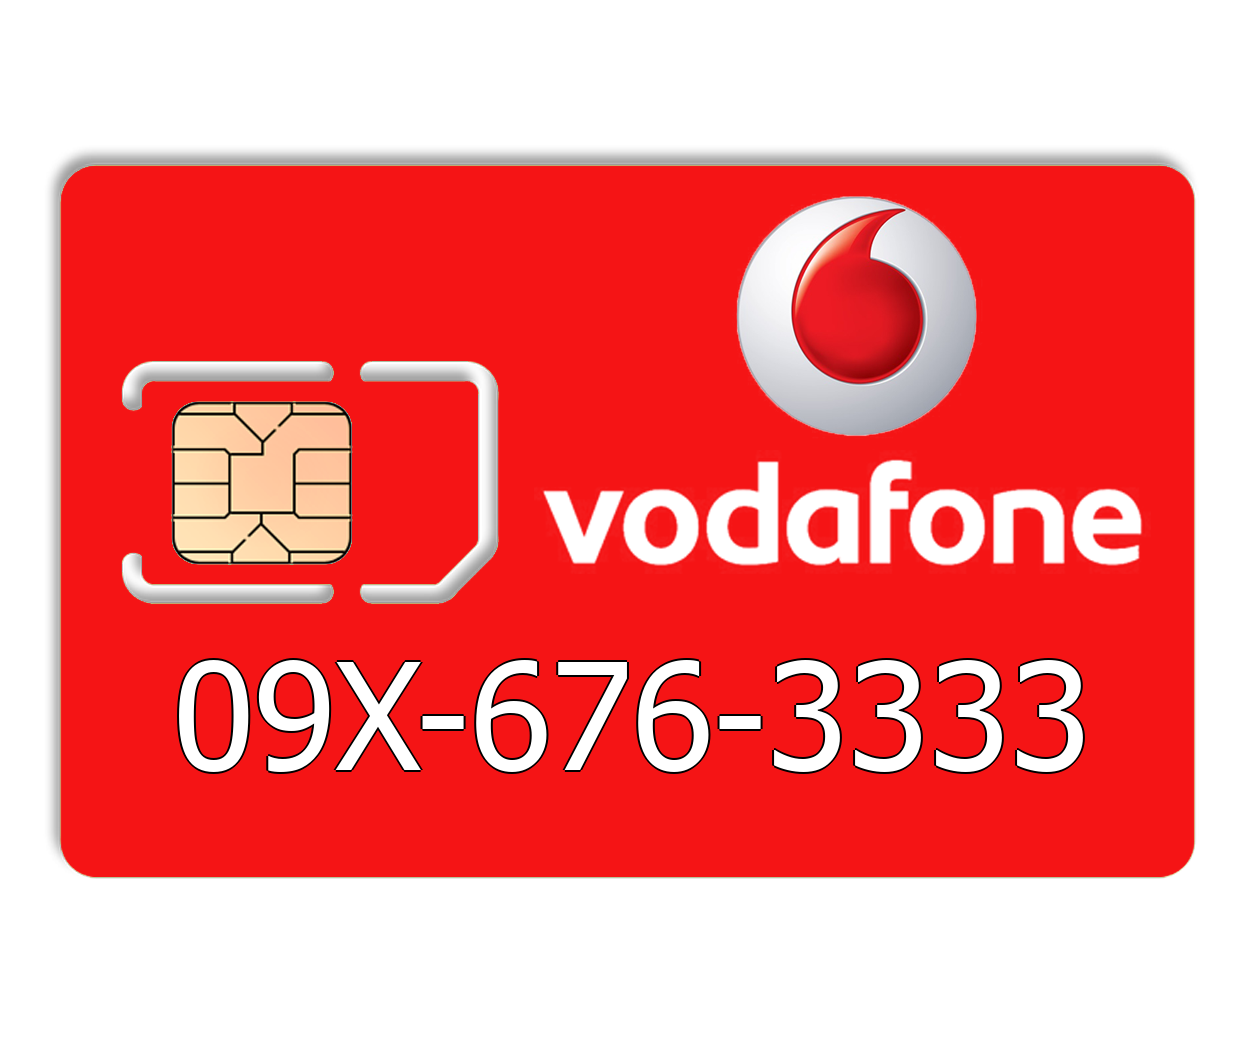 

Красивый номер Vodafone 09X-676-3333